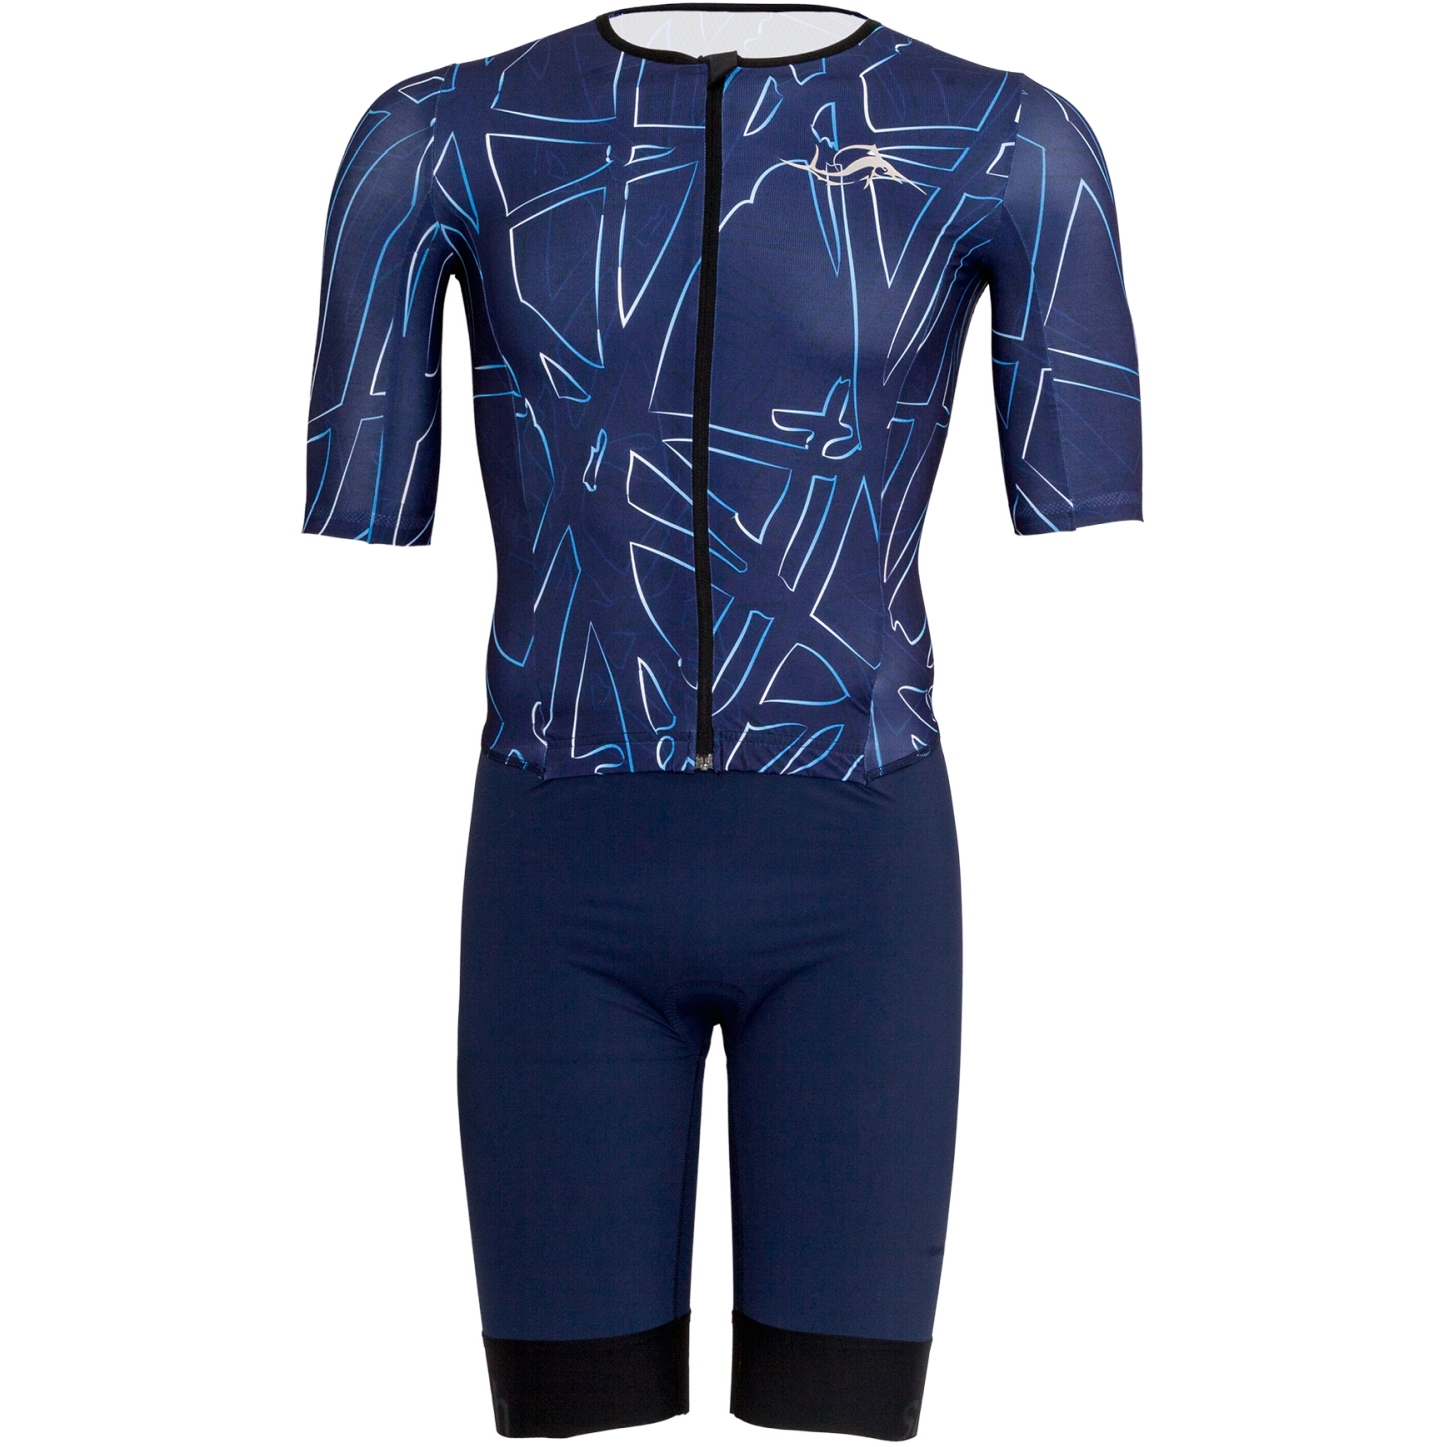 Produktbild von sailfish Aerosuit Perform Triathlon-Einteiler Herren - blau